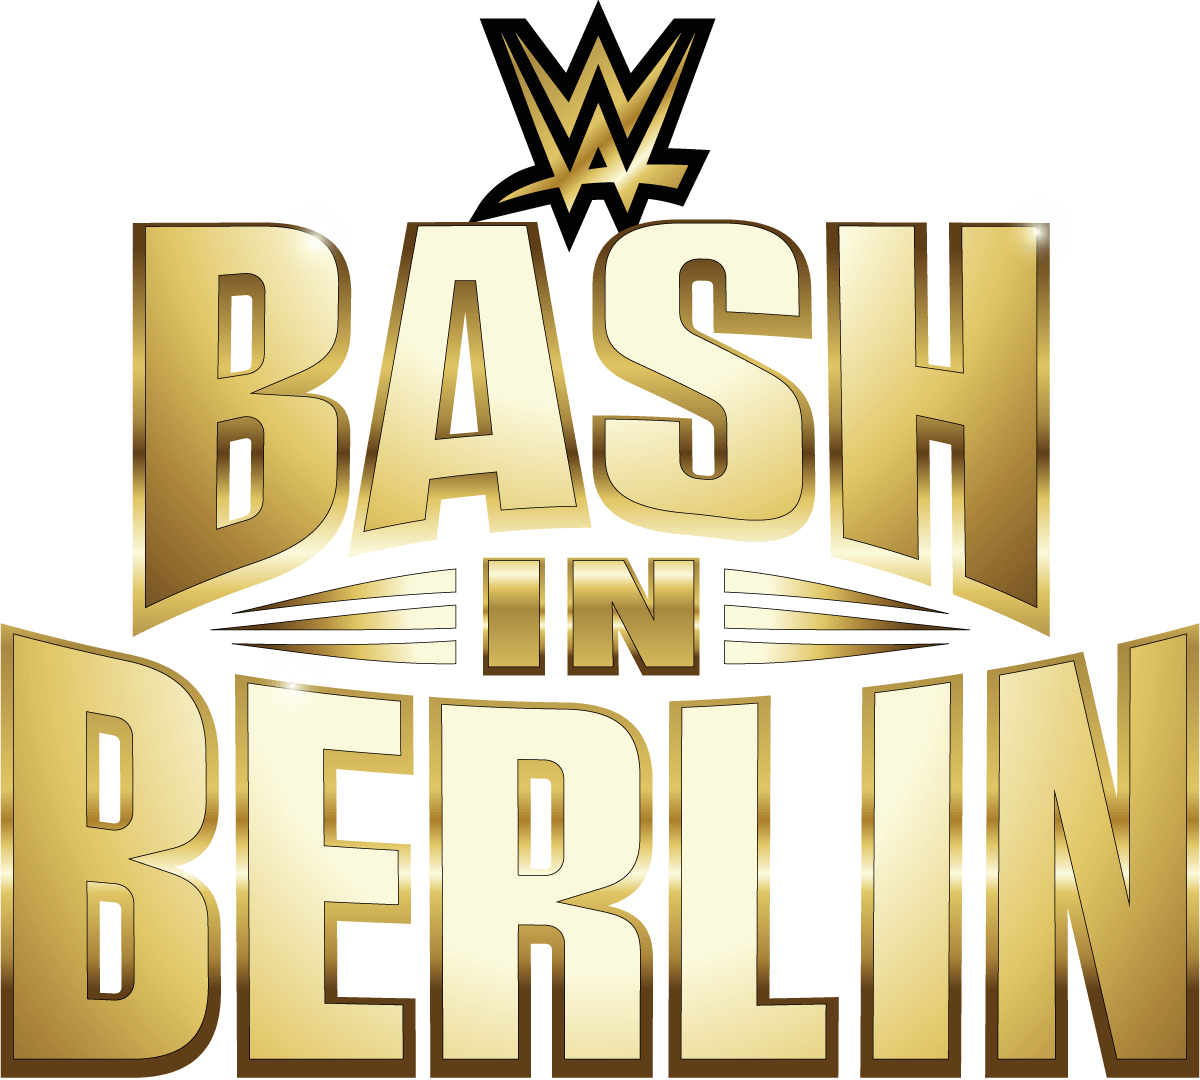 SmackDown & Bash in Berlin WWE